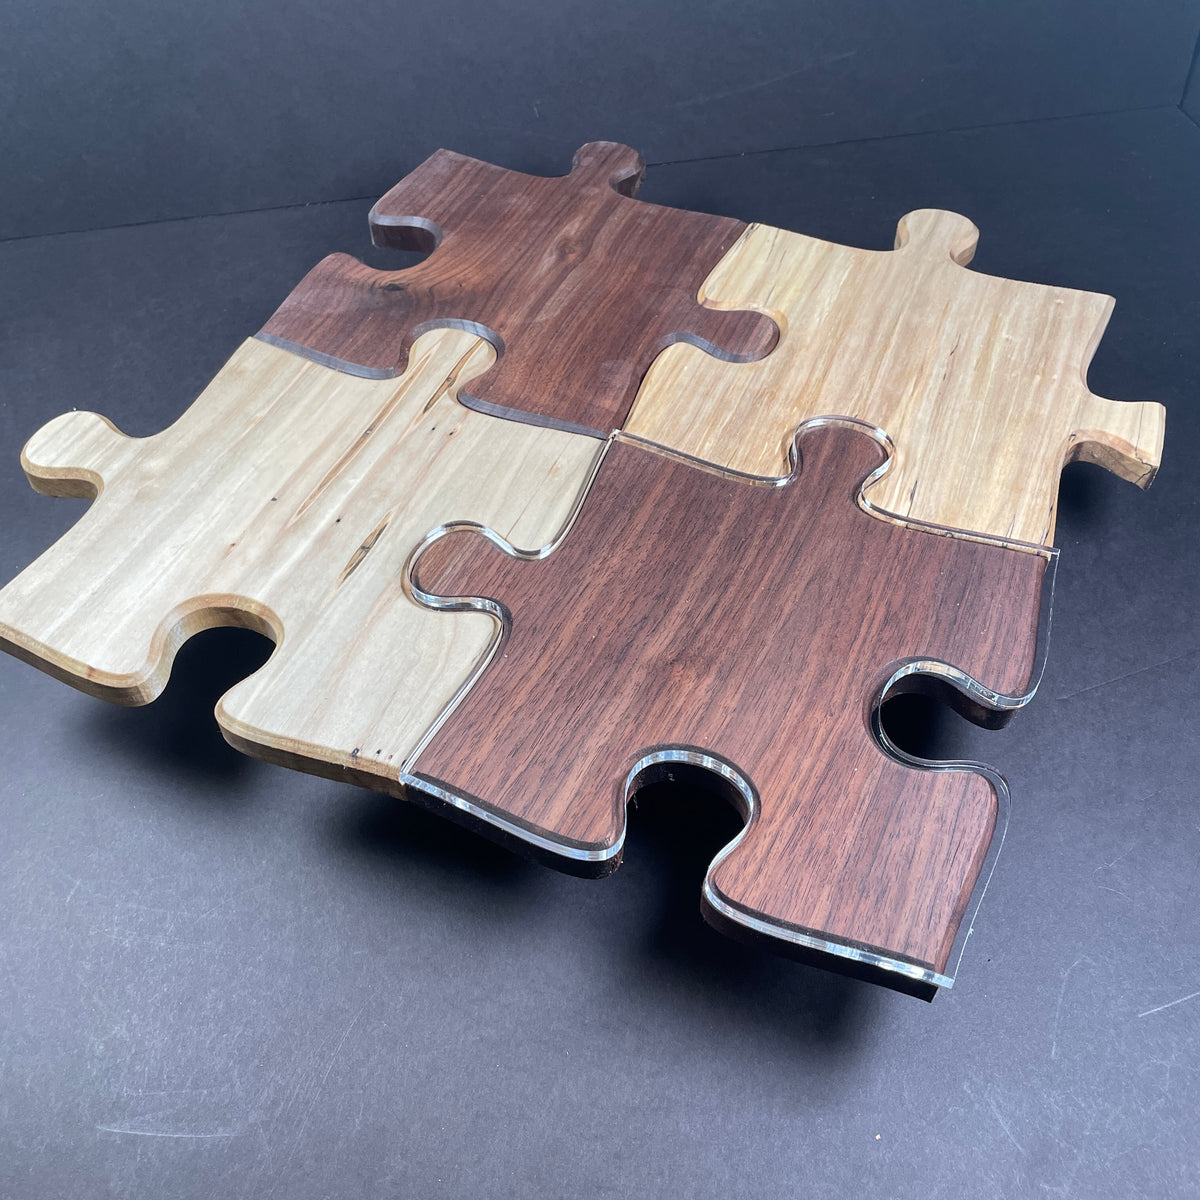 Las Vegas Strip - Wooden Puzzle